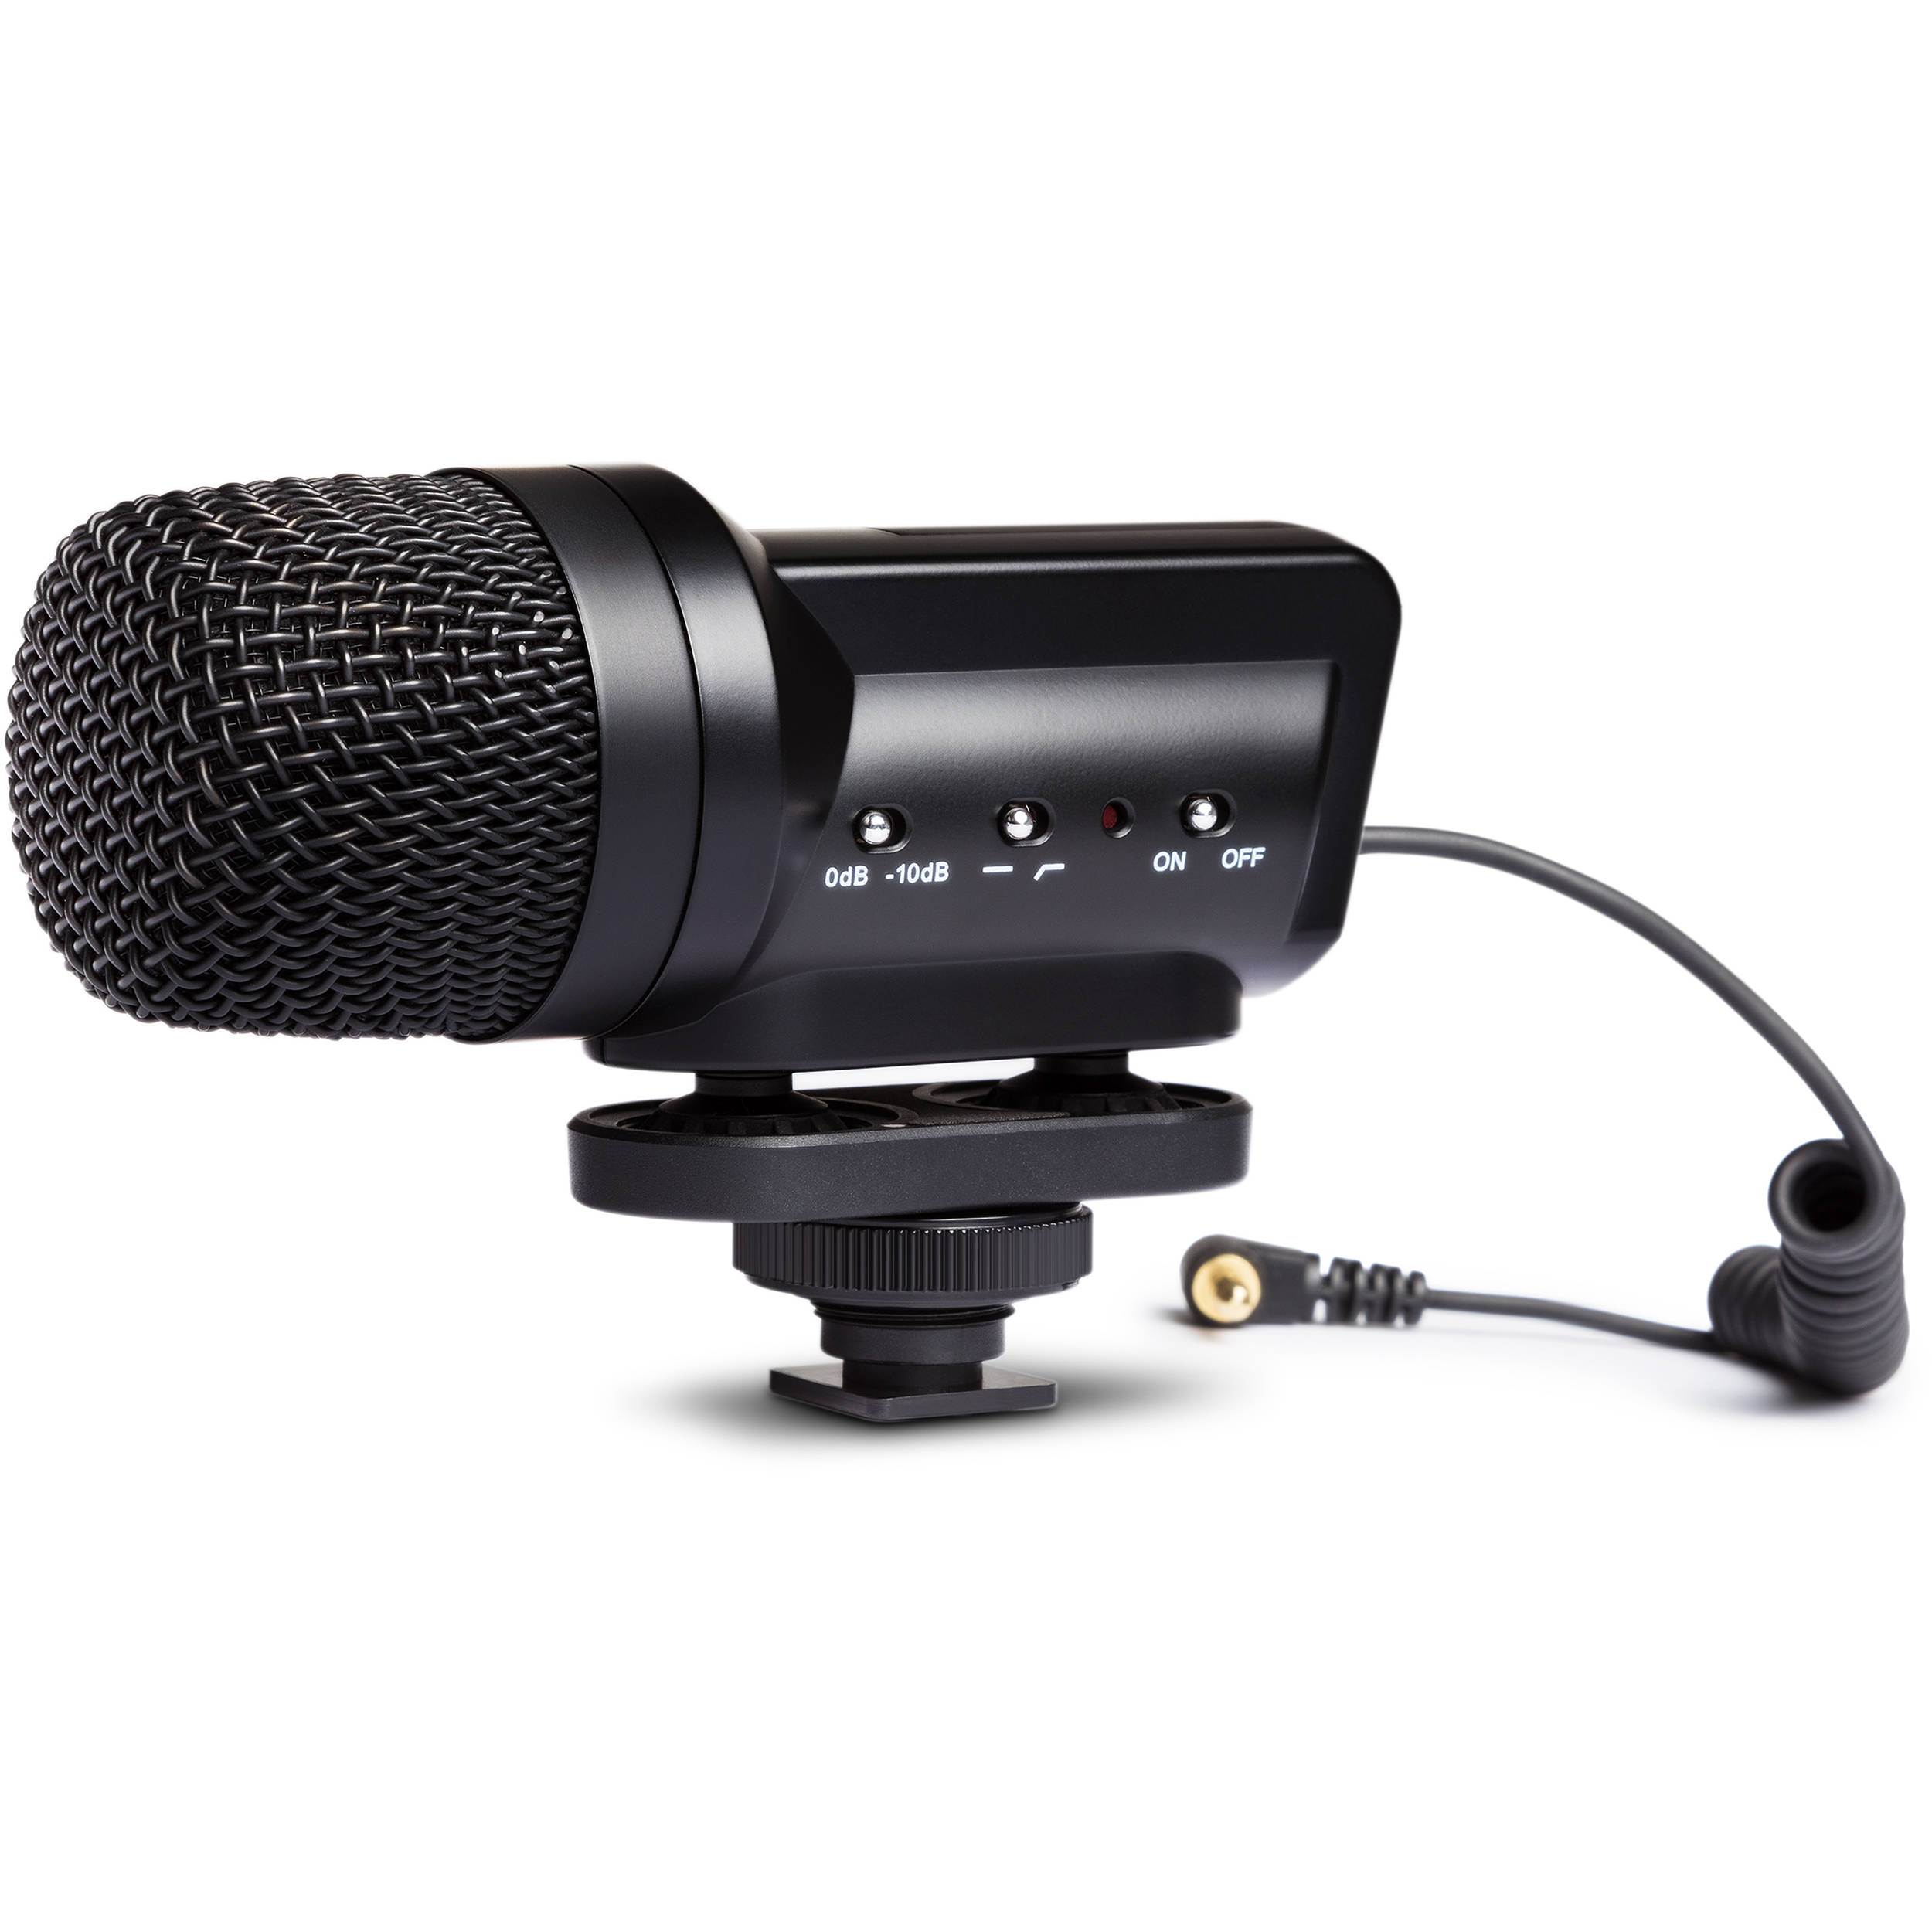 Marantz Professional Audio Scope SB-C2 X / Y Microphone condenseur stéréo pour les caméras DSLR (50 Hz - 18 kHz)